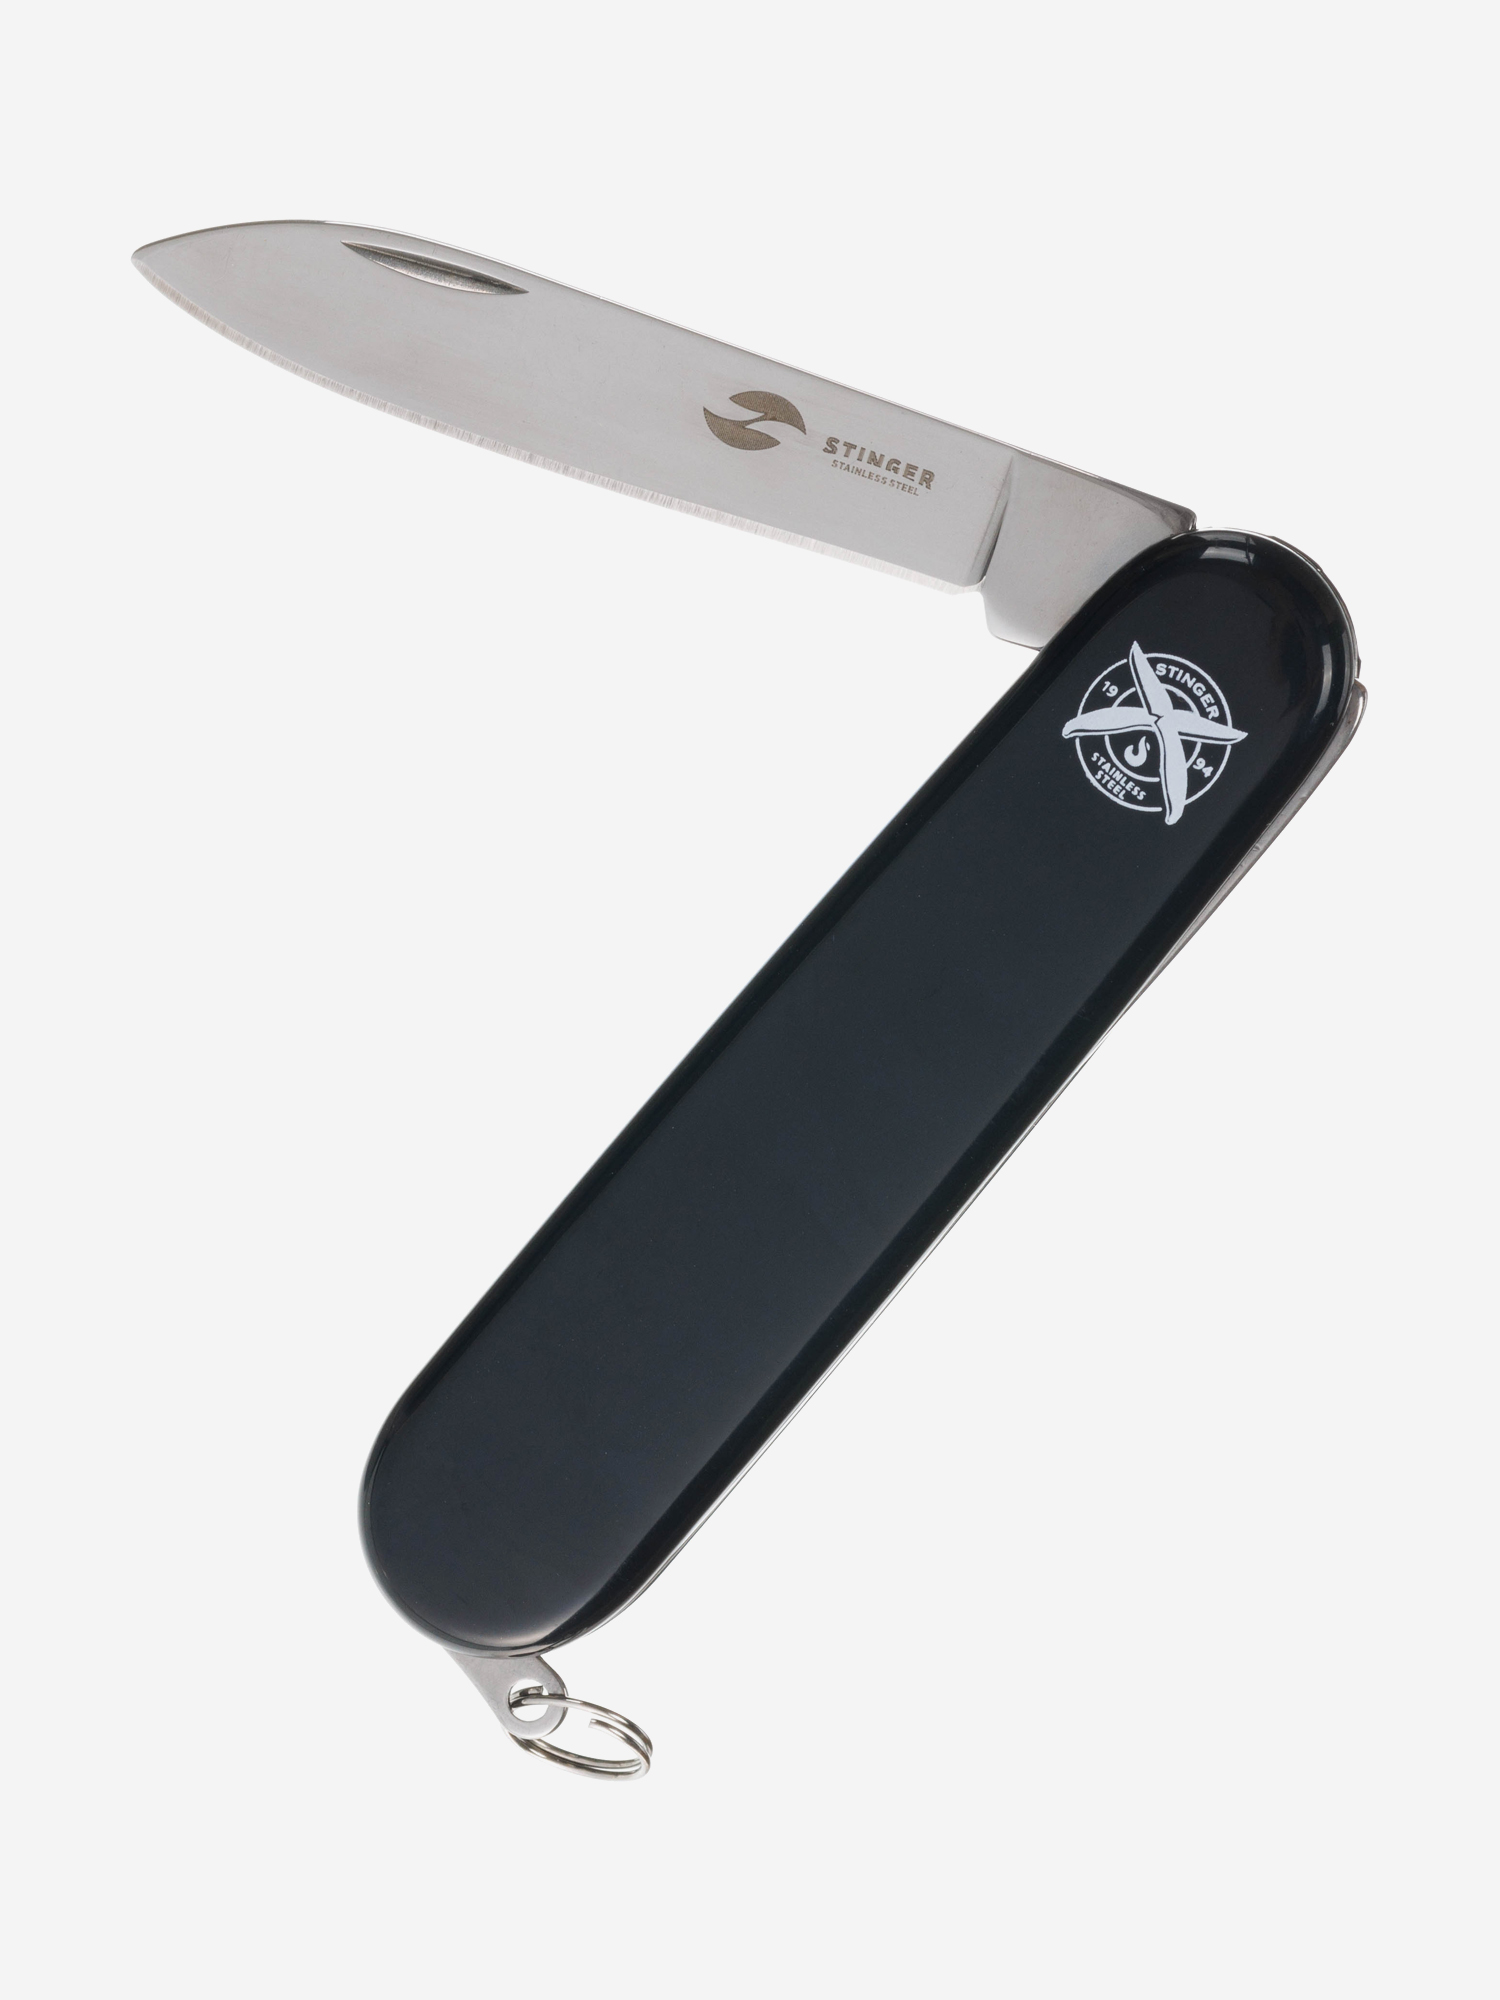 Нож перочинный Stinger, 90 мм, 2 функции, материал рукояти: АБС-пластик (черный), Черный термокружка stinger 0 42 л сталь пластик белый с принтом 7 4 x 6 7 x 22 4 см белый